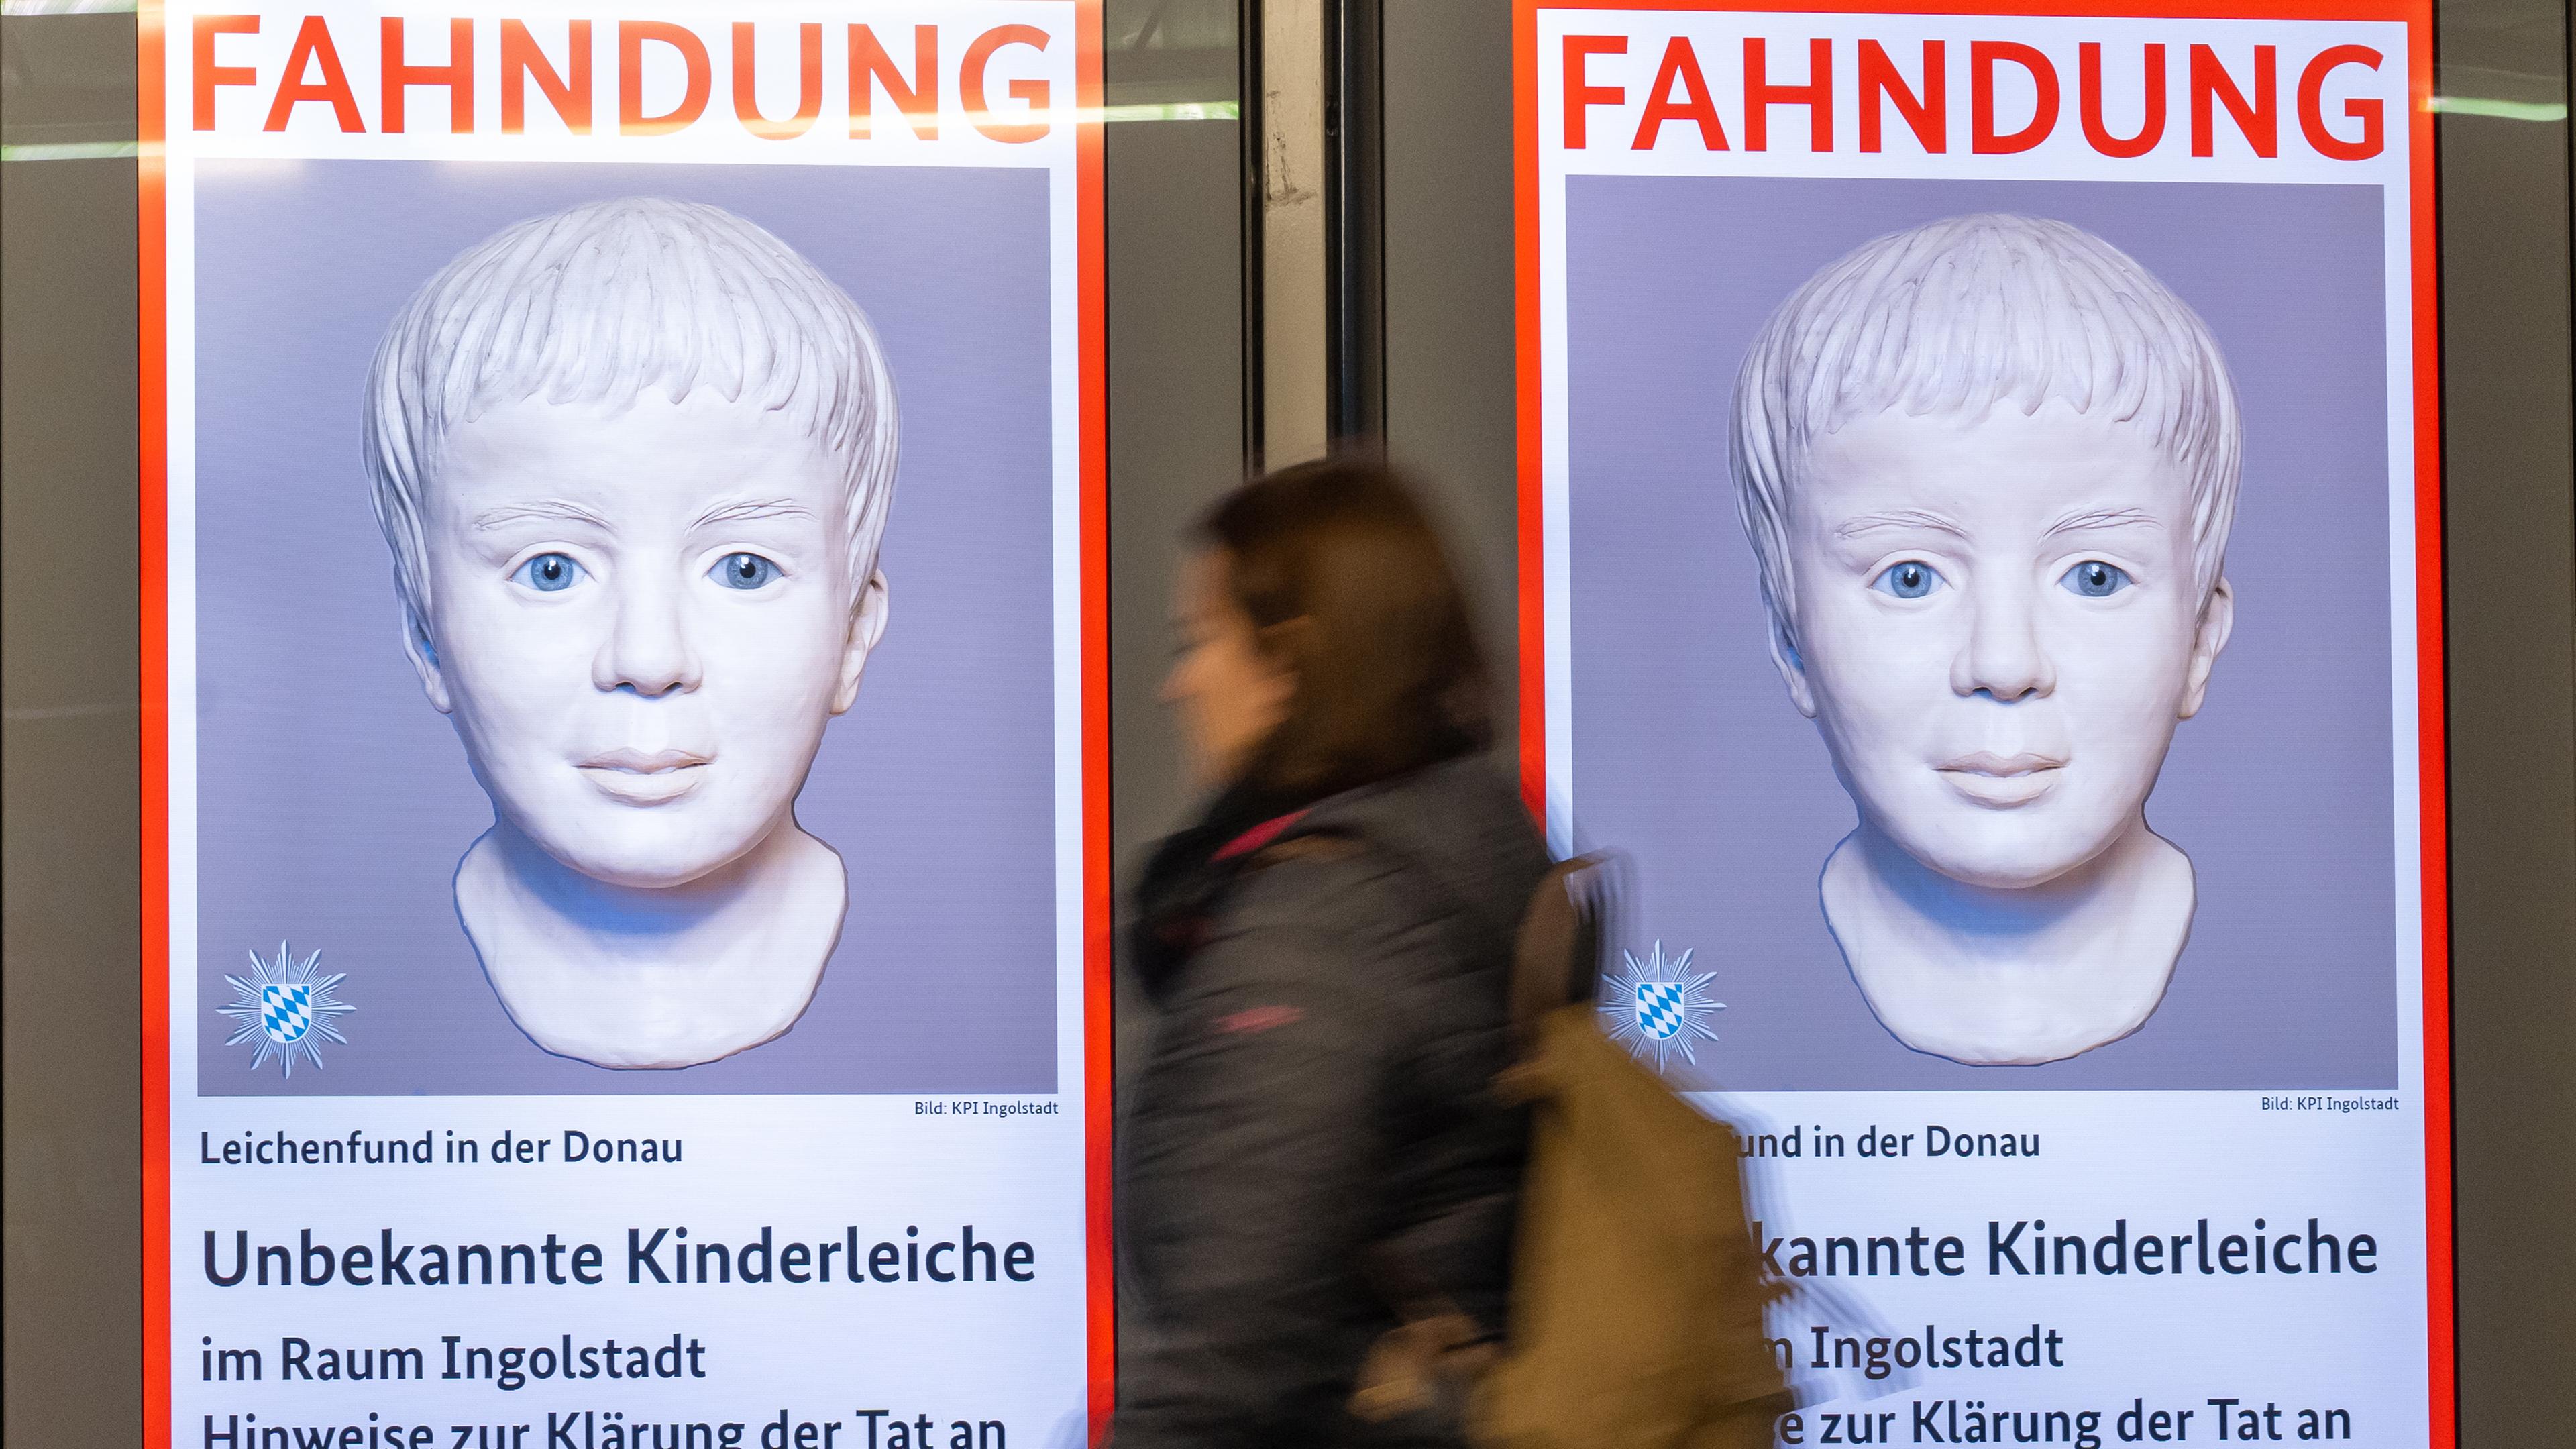  Eine Frau geht am Ostbahnhof in München an einem digitalen Fahndungsplakat vorbei. 